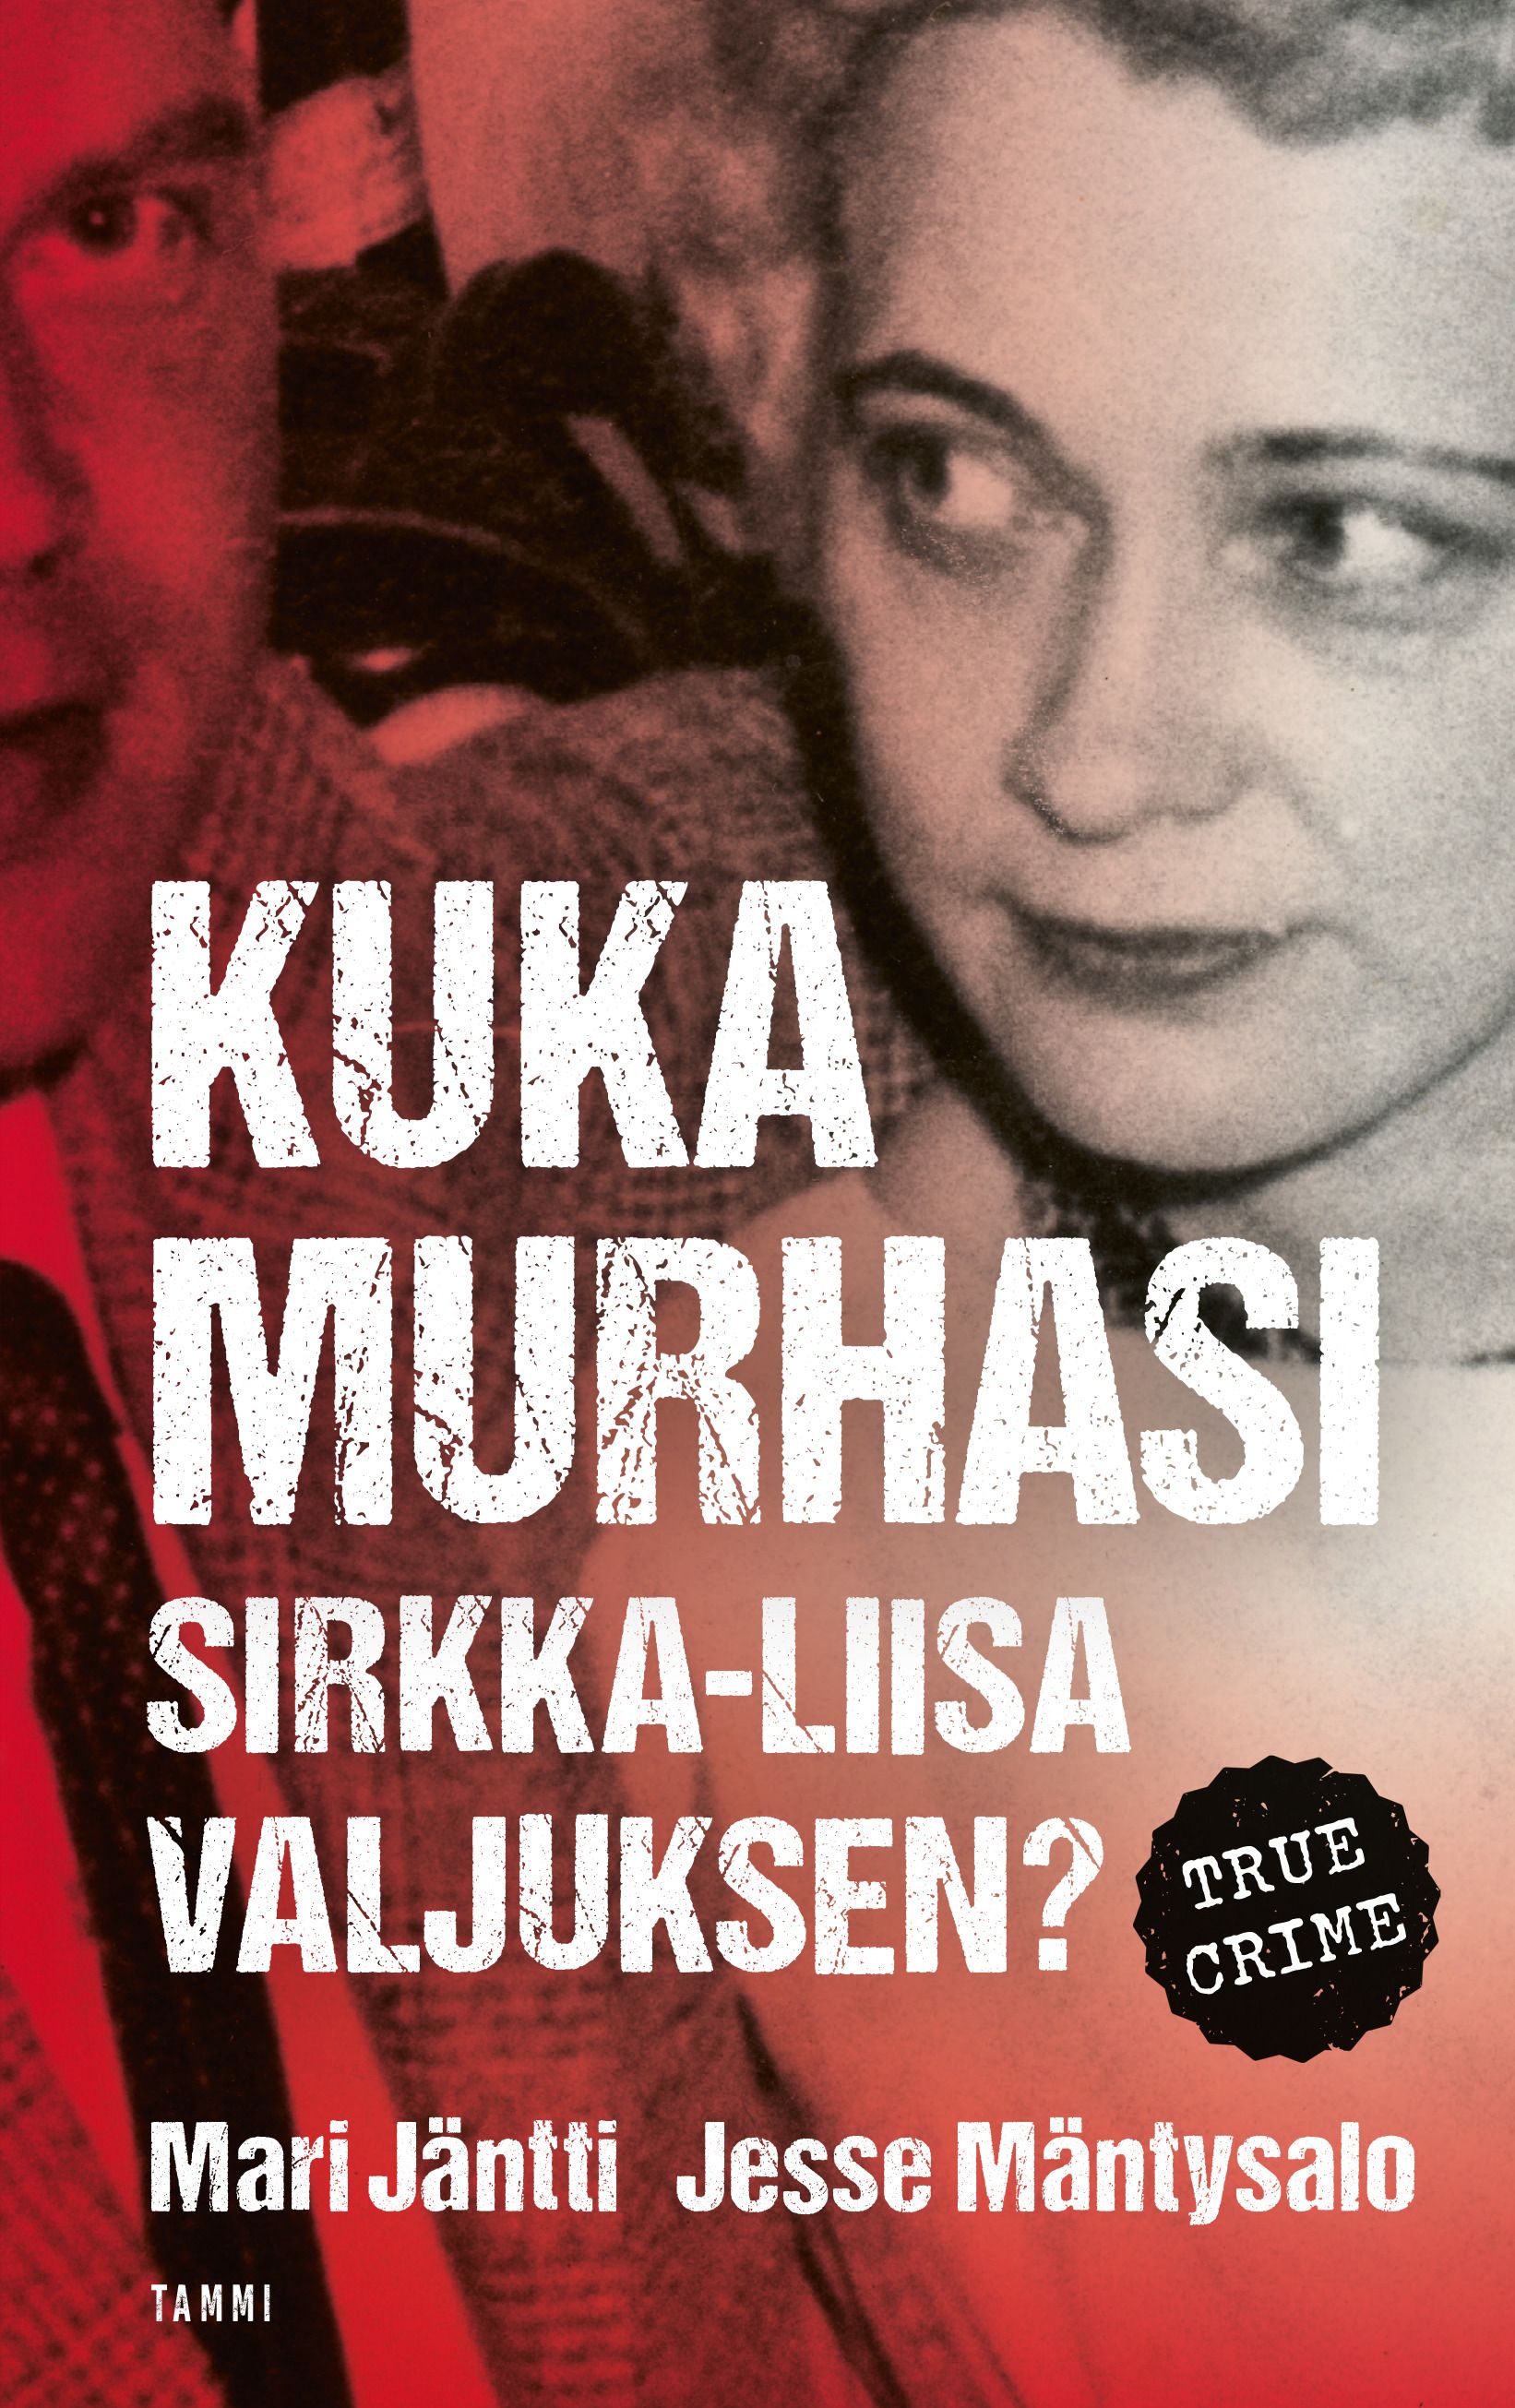 Jesse Mäntysalo & Mari Jäntti : Kuka murhasi Sirkka-Liisa Valjuksen?